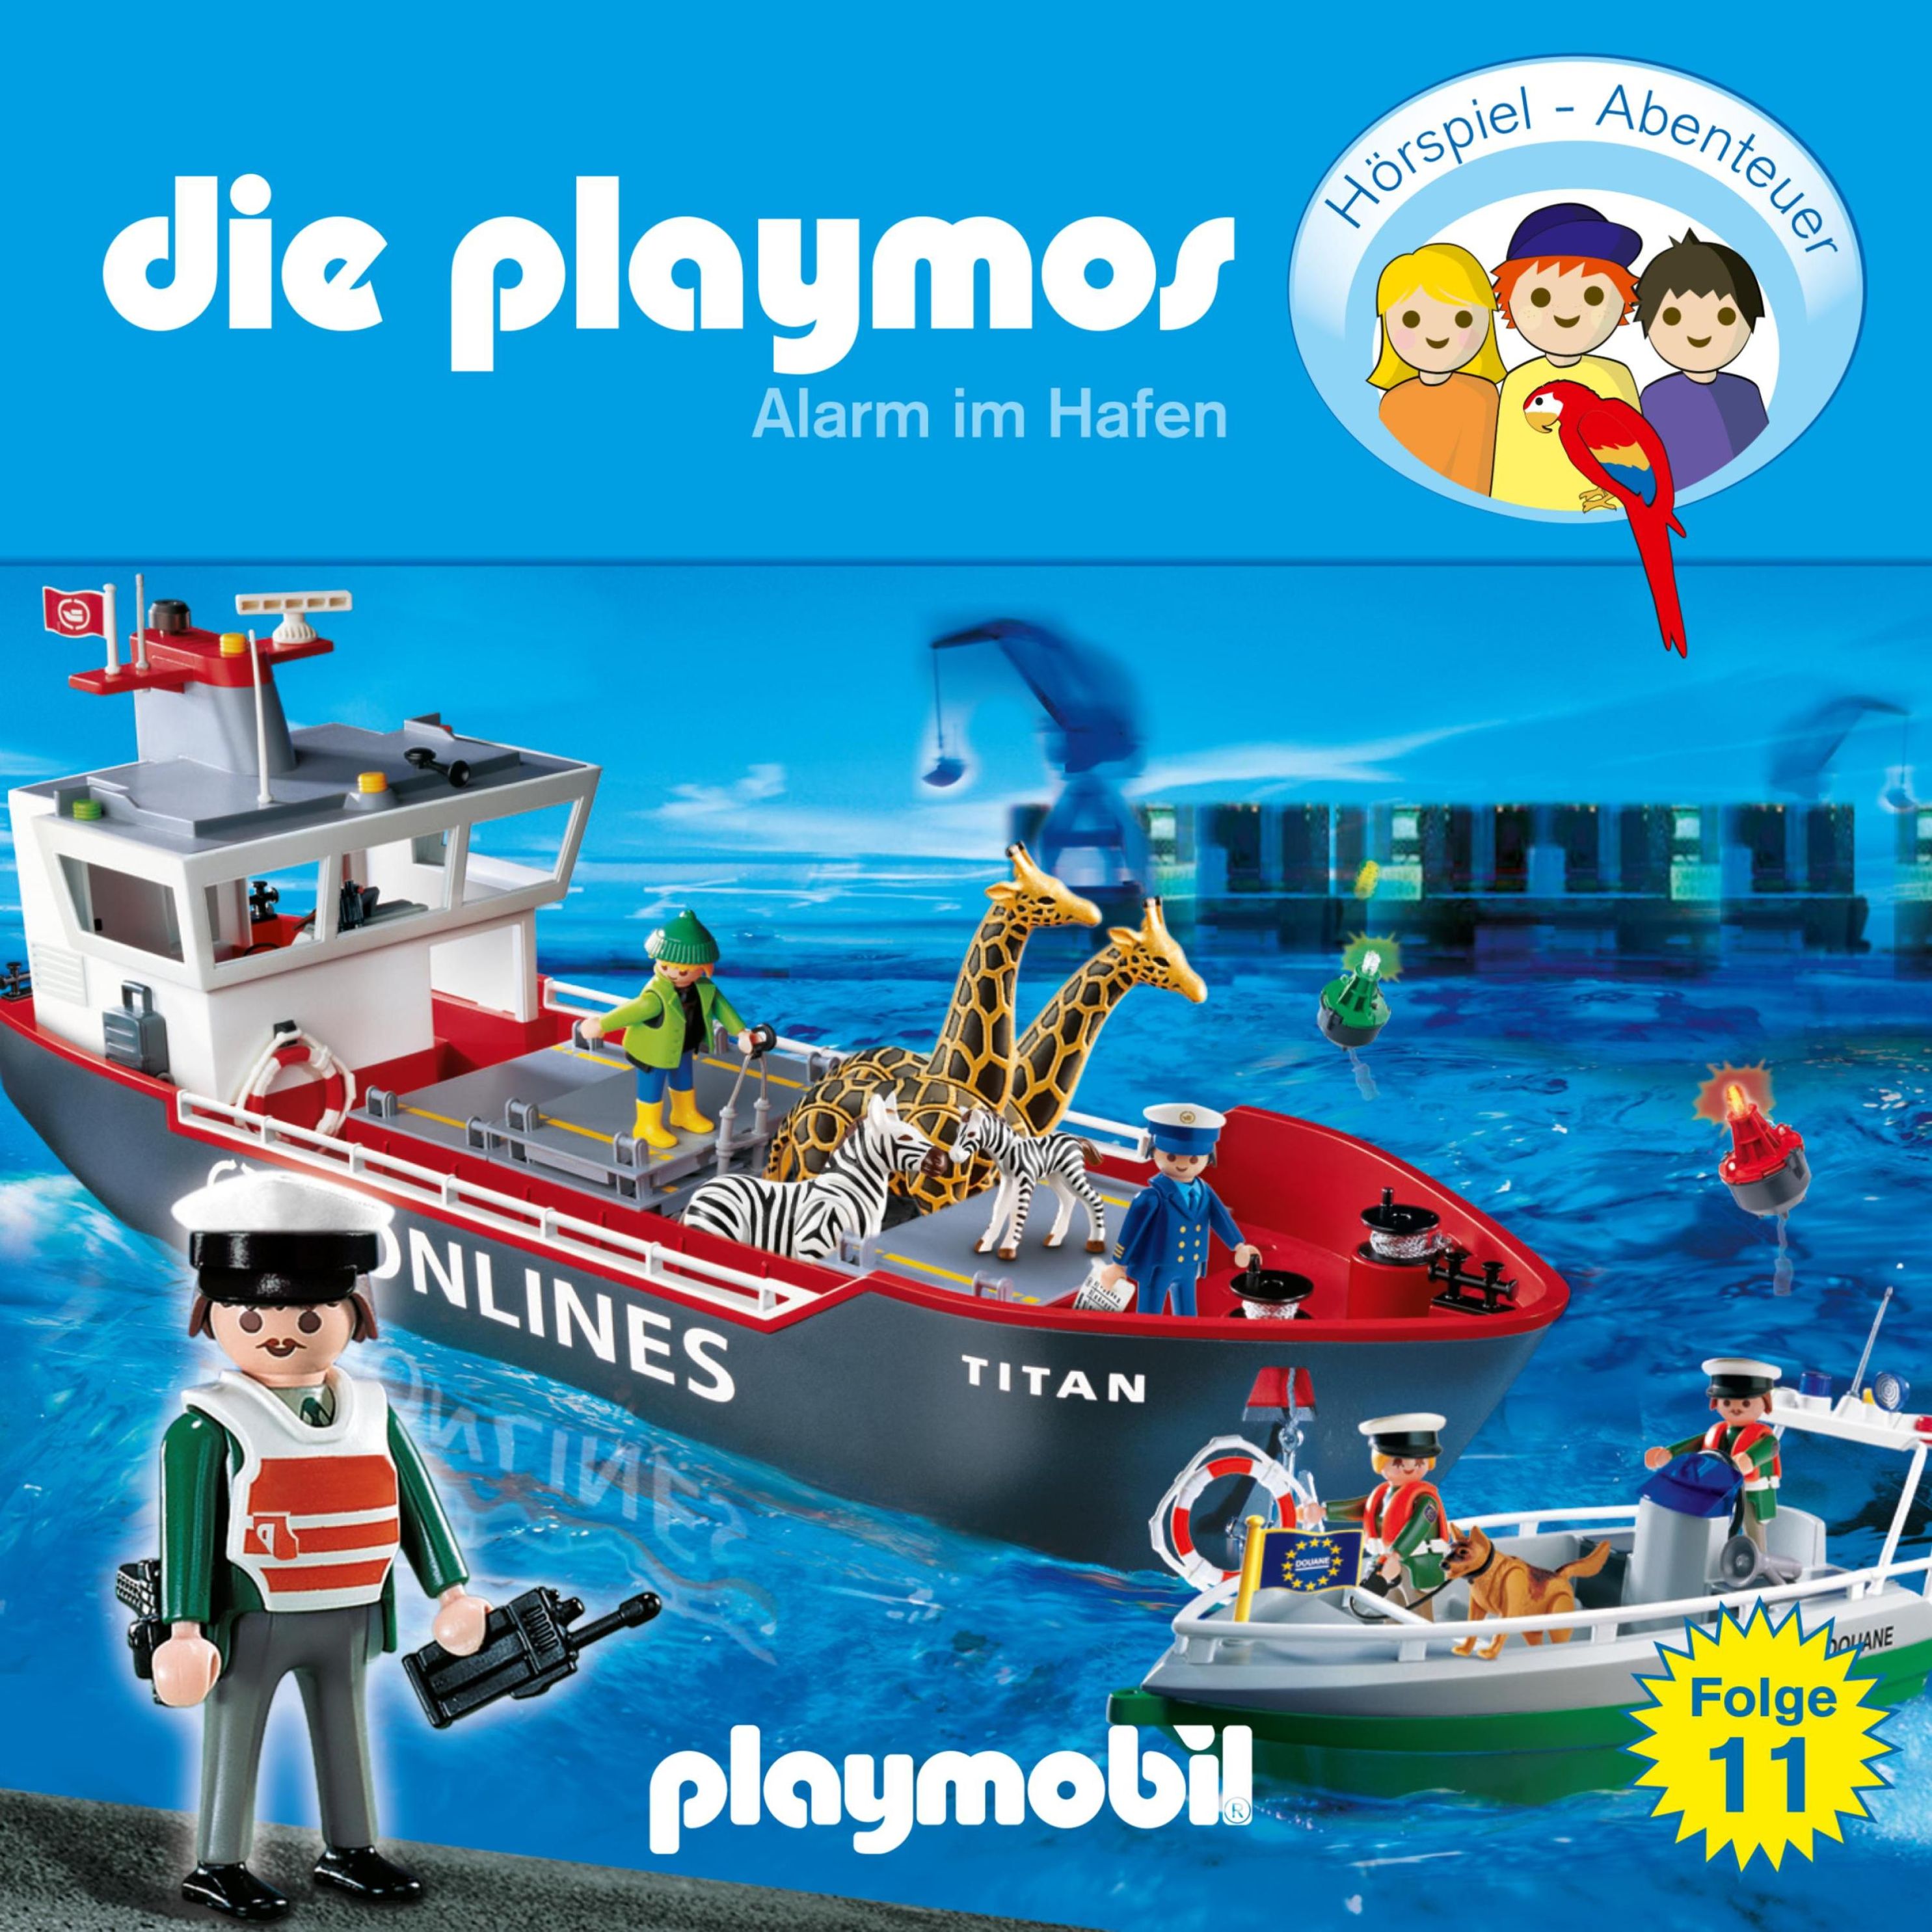 Die Playmos - Das Original Playmobil Hörspiel - 11 - Die Playmos - Das  Original Playmobil Hörspiel, Folge 11: Alarm im Hafen Hörbuch Download